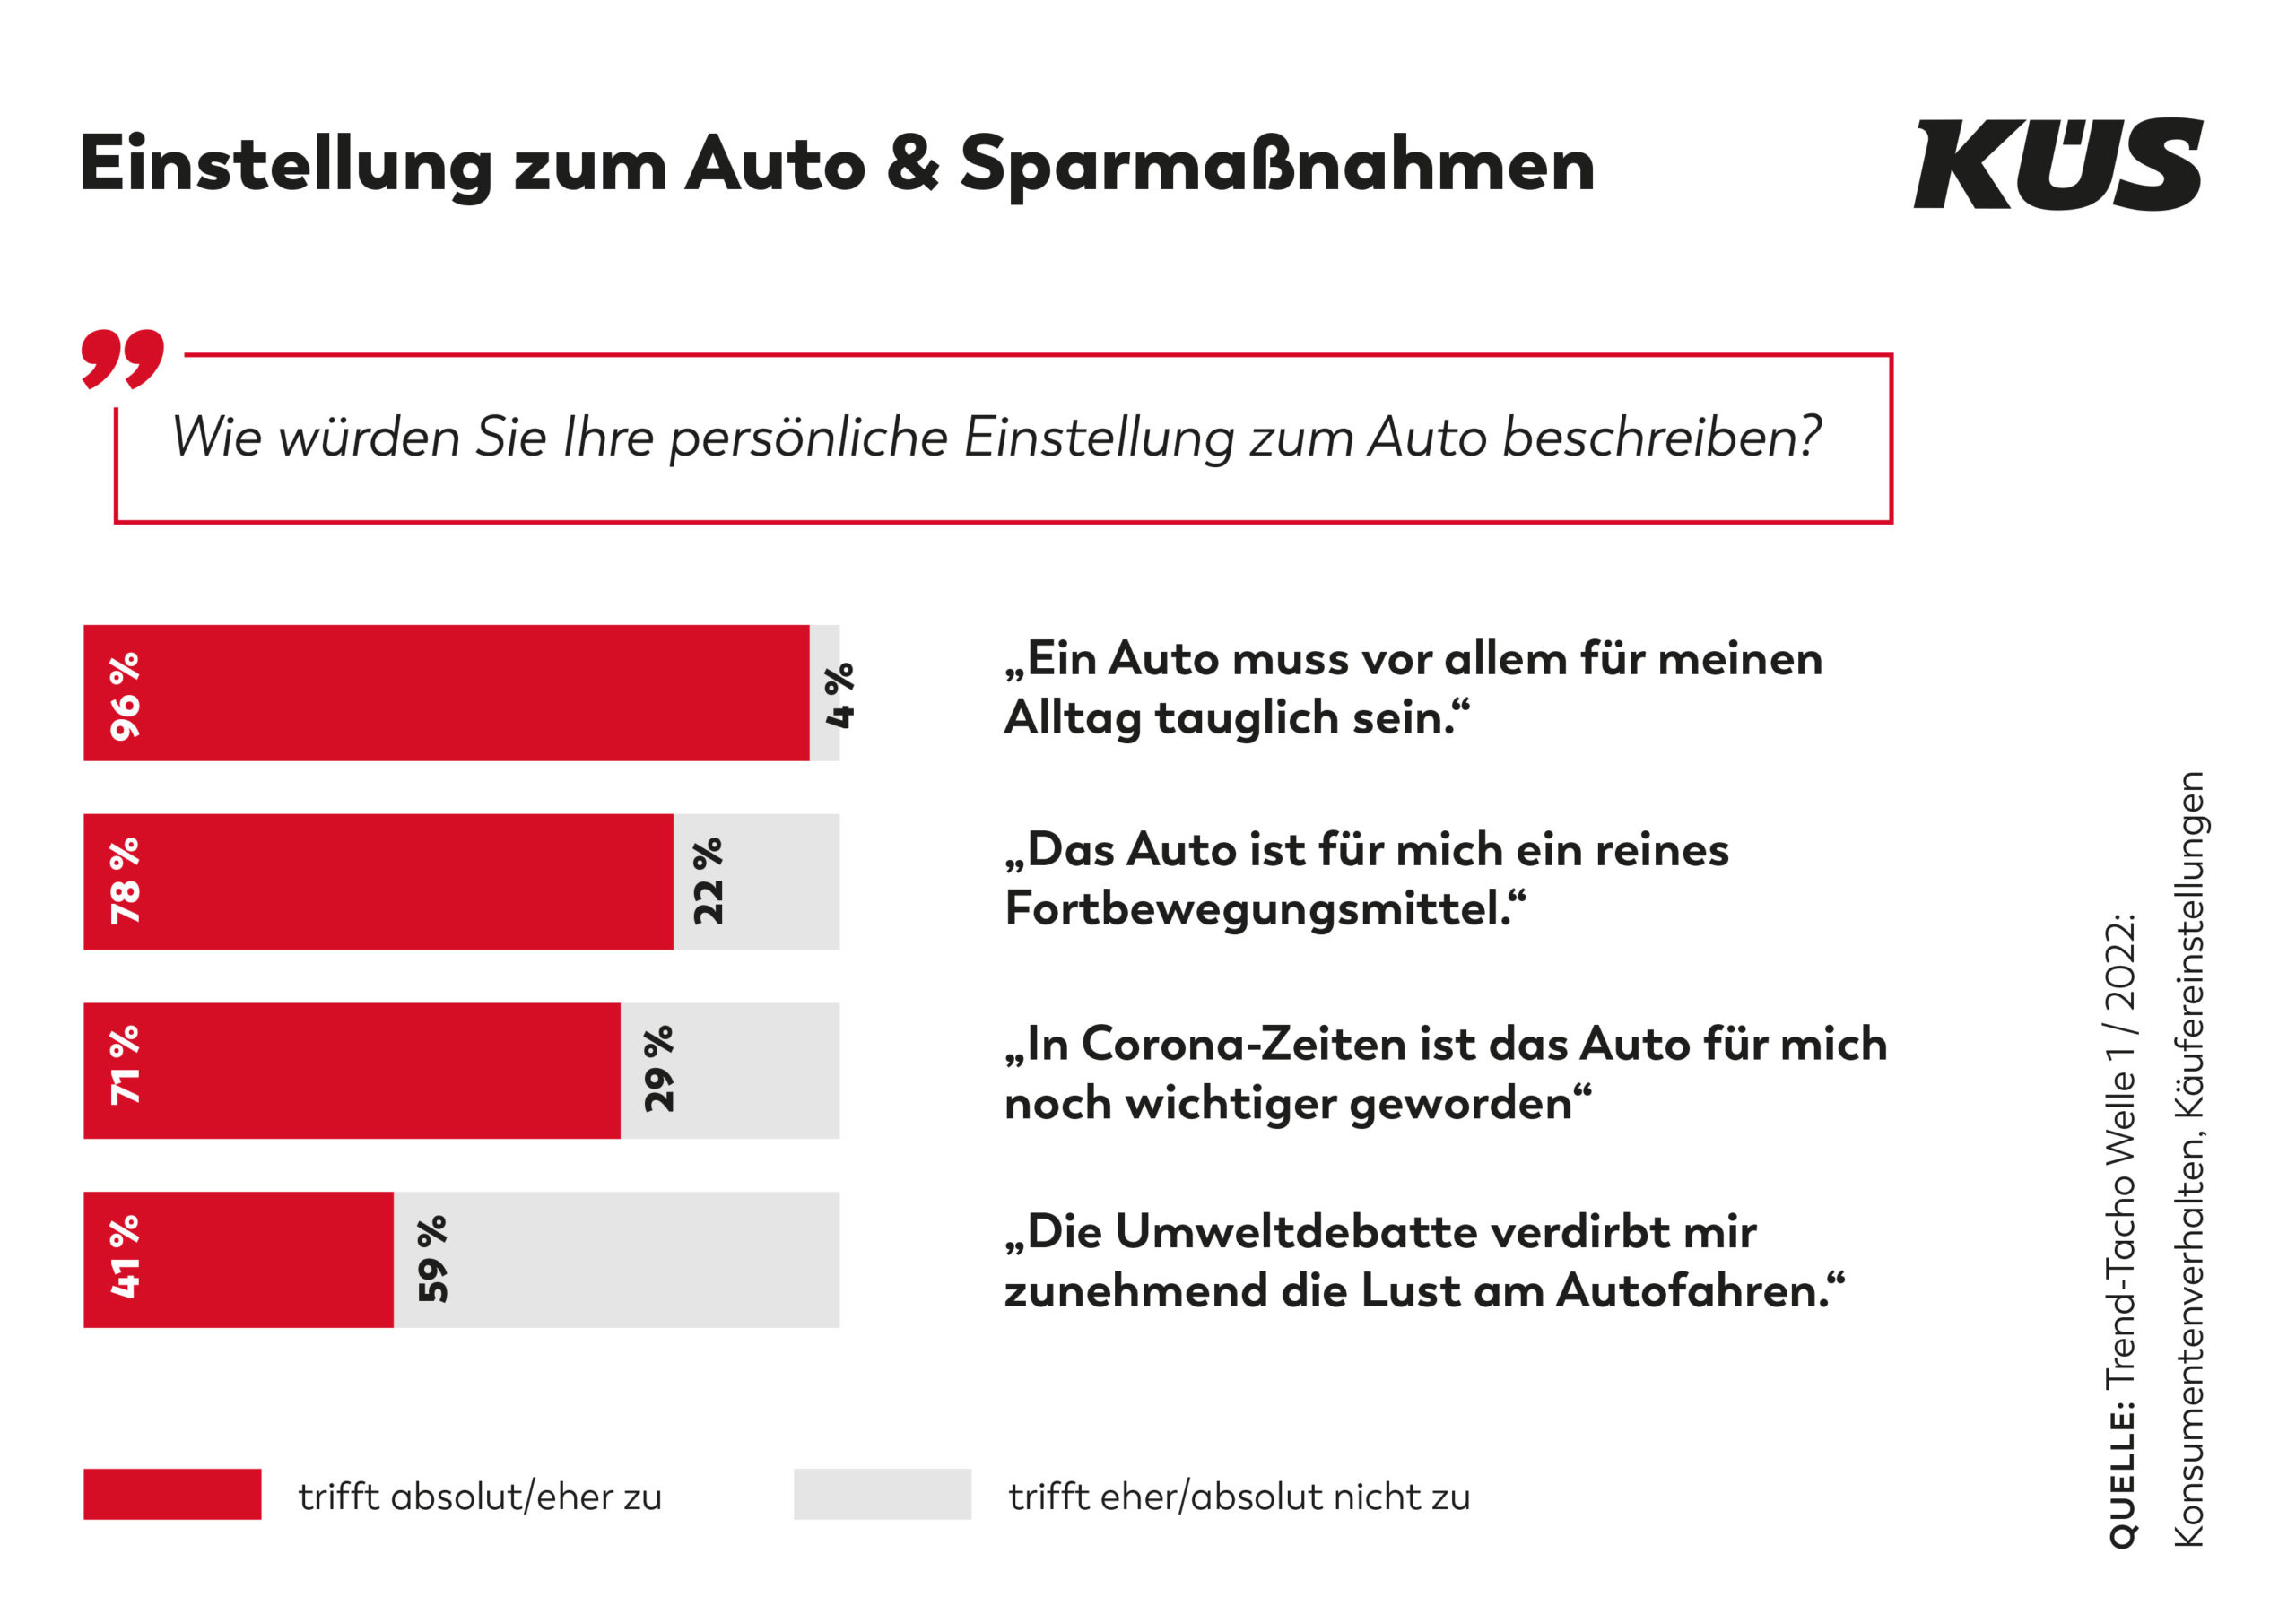 KÜS: Wird jetzt gespart? Wie stehen die Deutschen zum Auto? - Der Trend-Tacho hat nachgefragt Umweltschutz ein Thema Nur mäßiges Interesse an Neuwagen